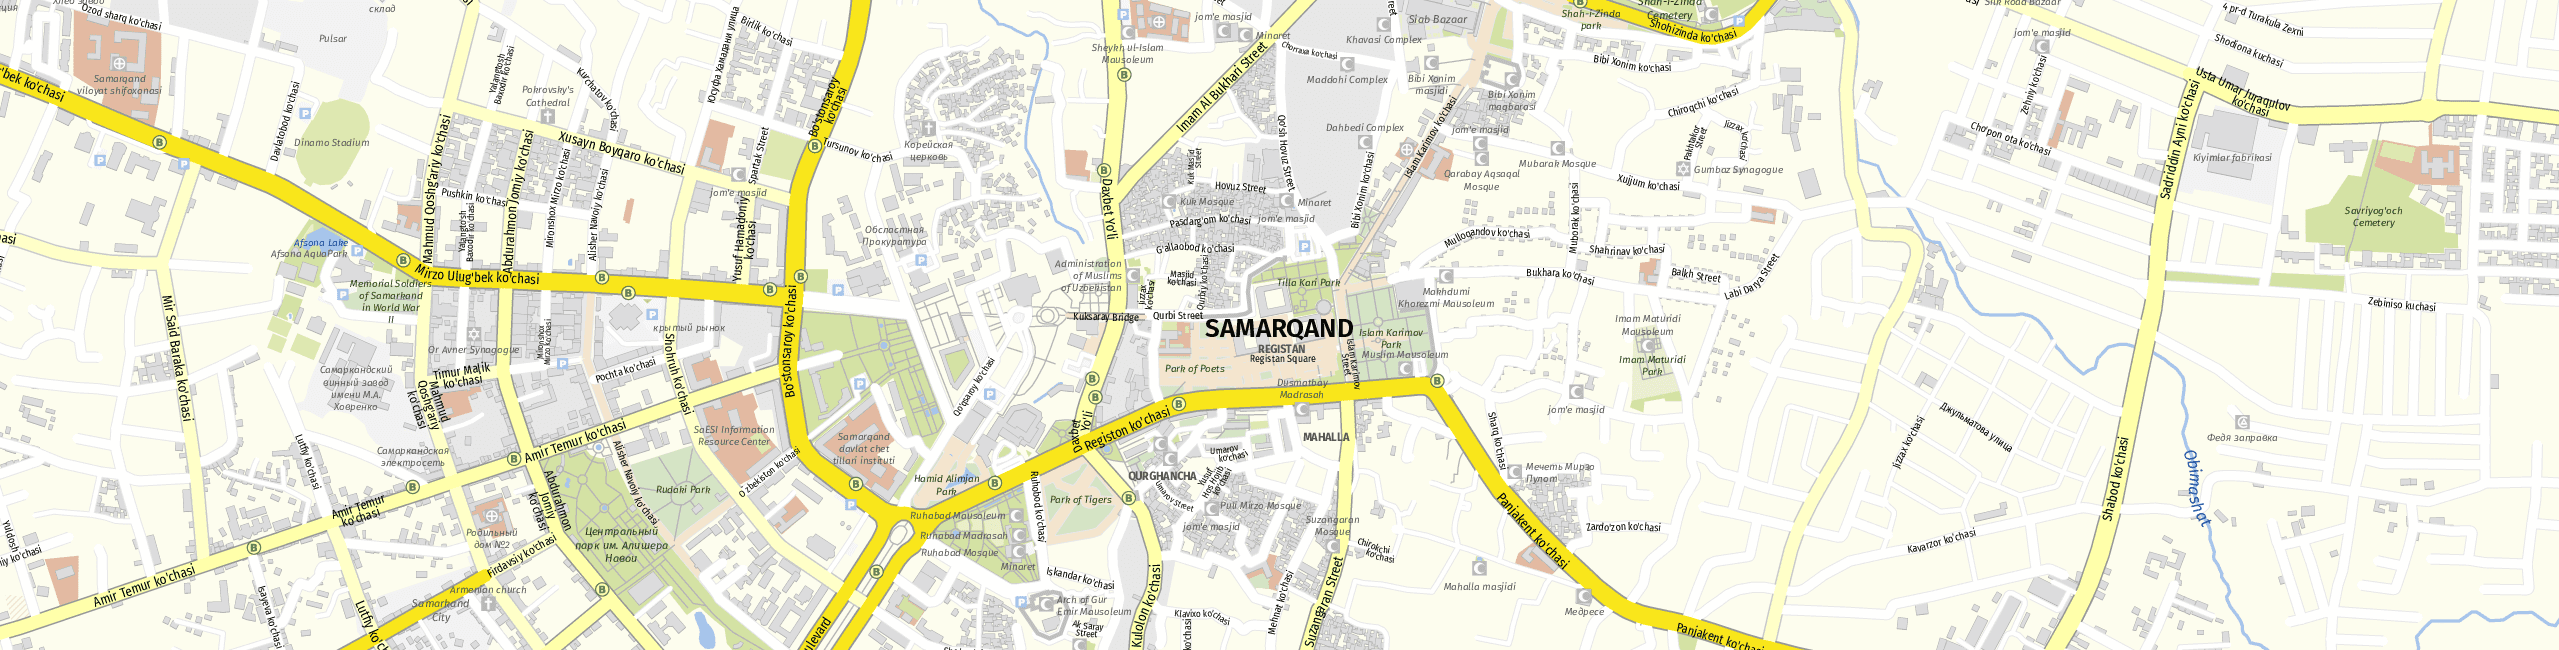 Stadtplan Samarkand zum Downloaden.